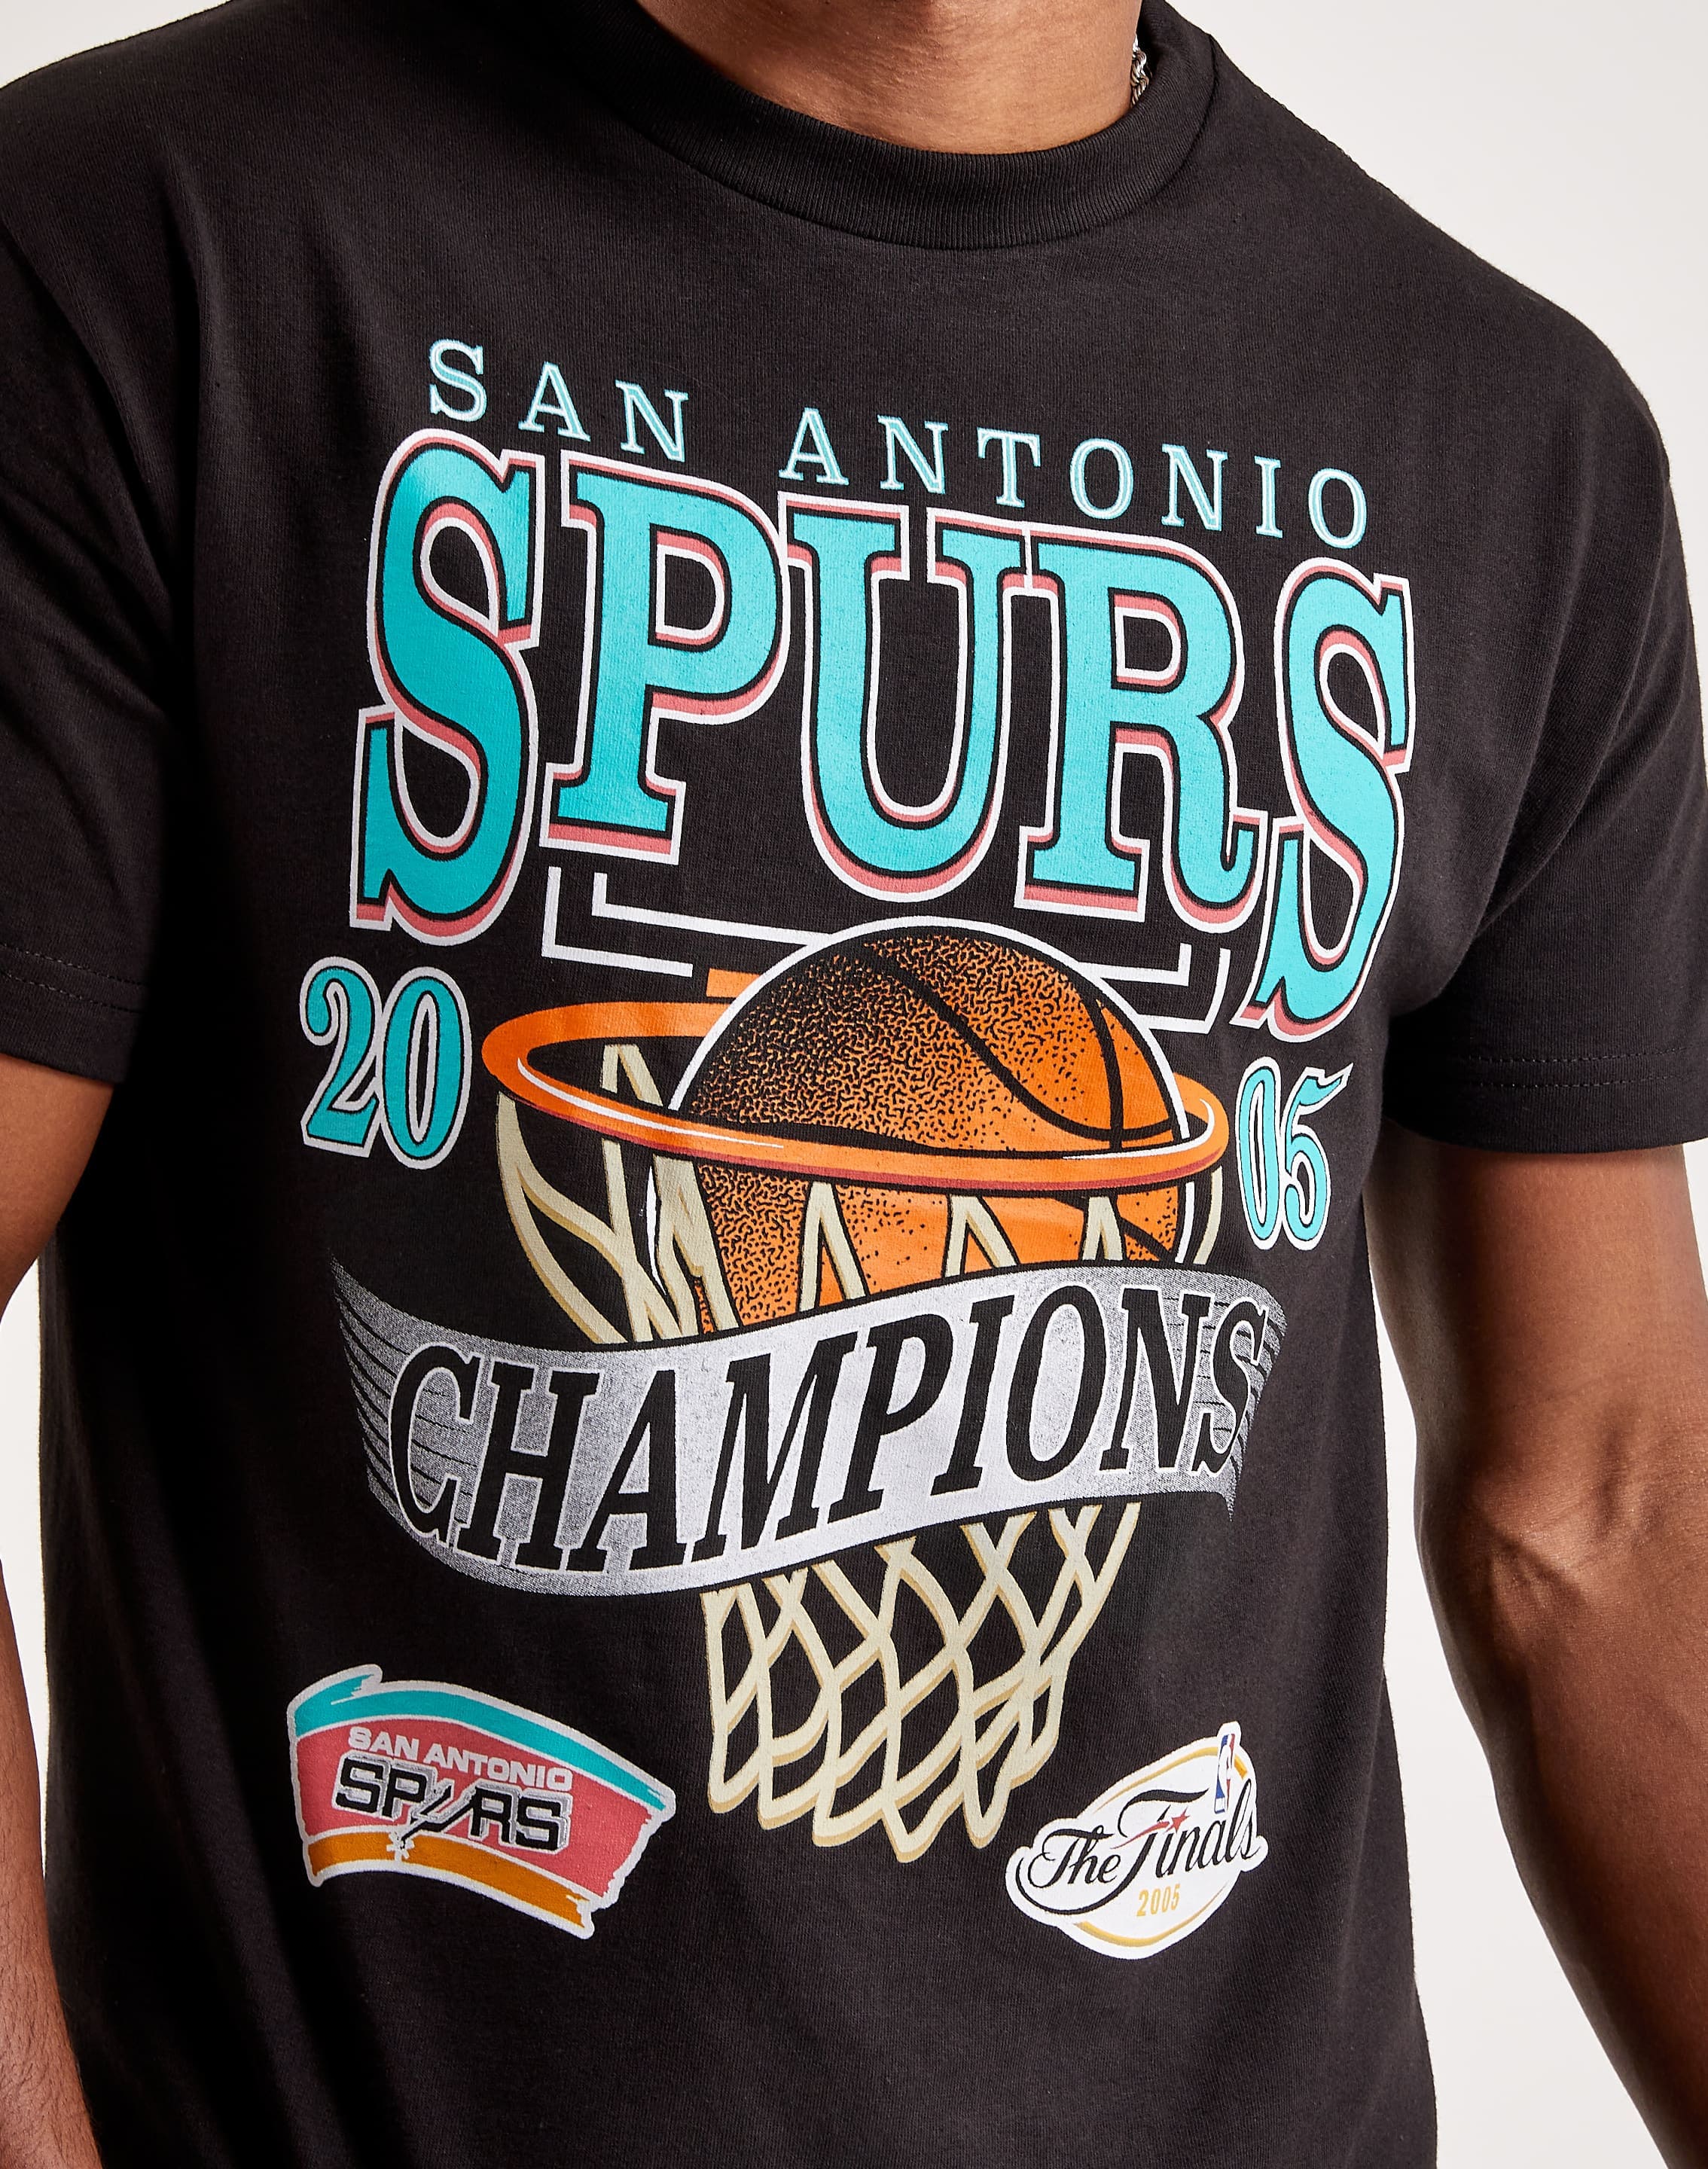 San Antonio Spurs T-shirt, Condition: Good, Size